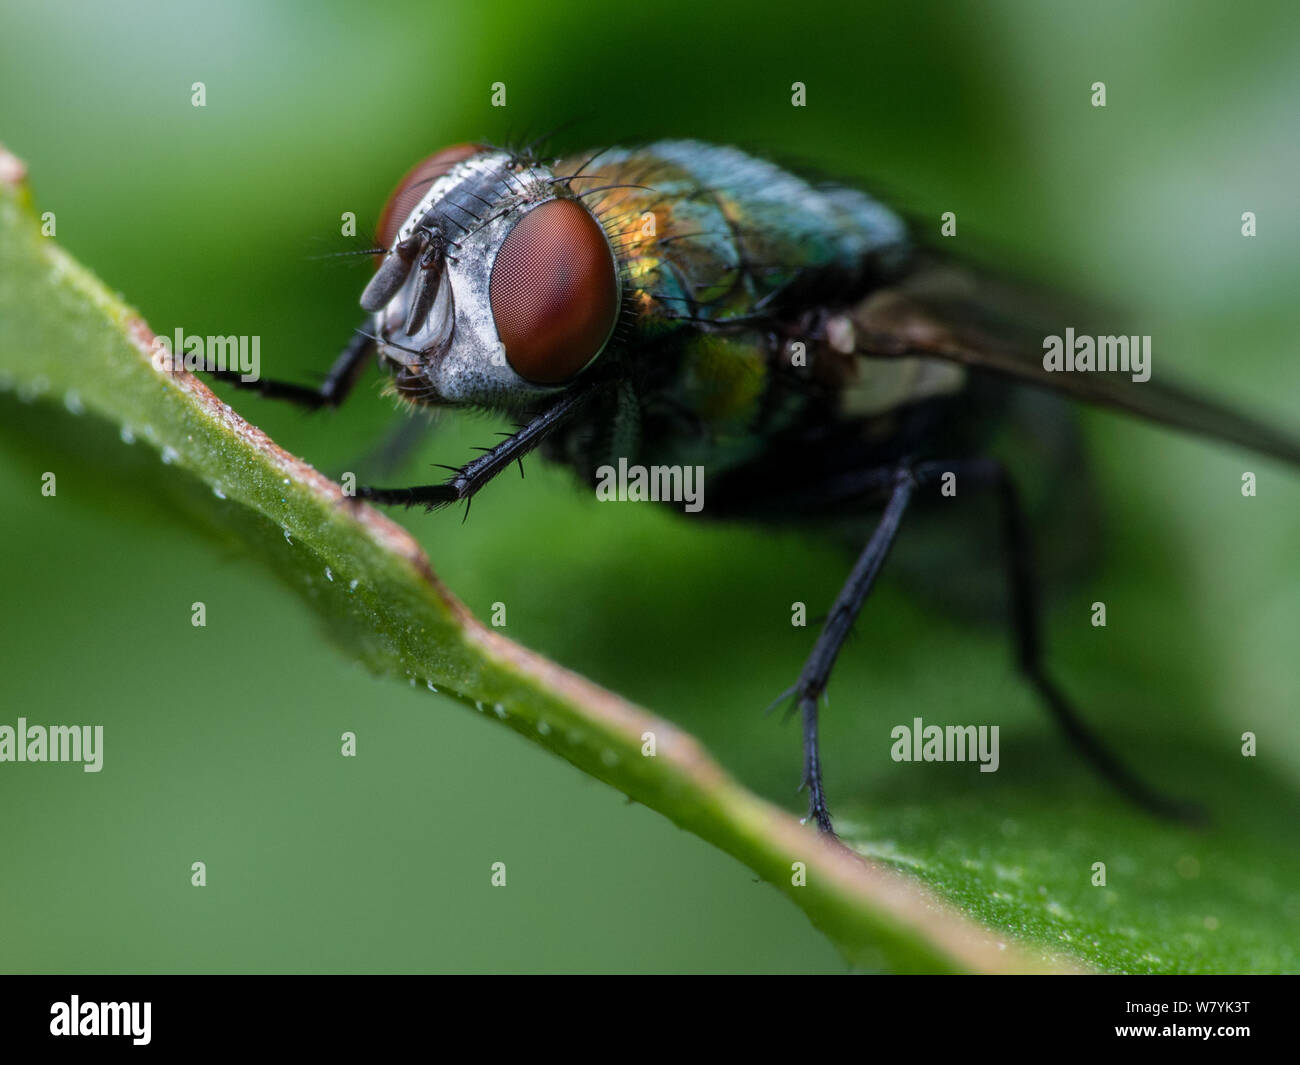 Bouteille verte frontal fly close-up, insecte sur une feuille verte d'un jardin Banque D'Images